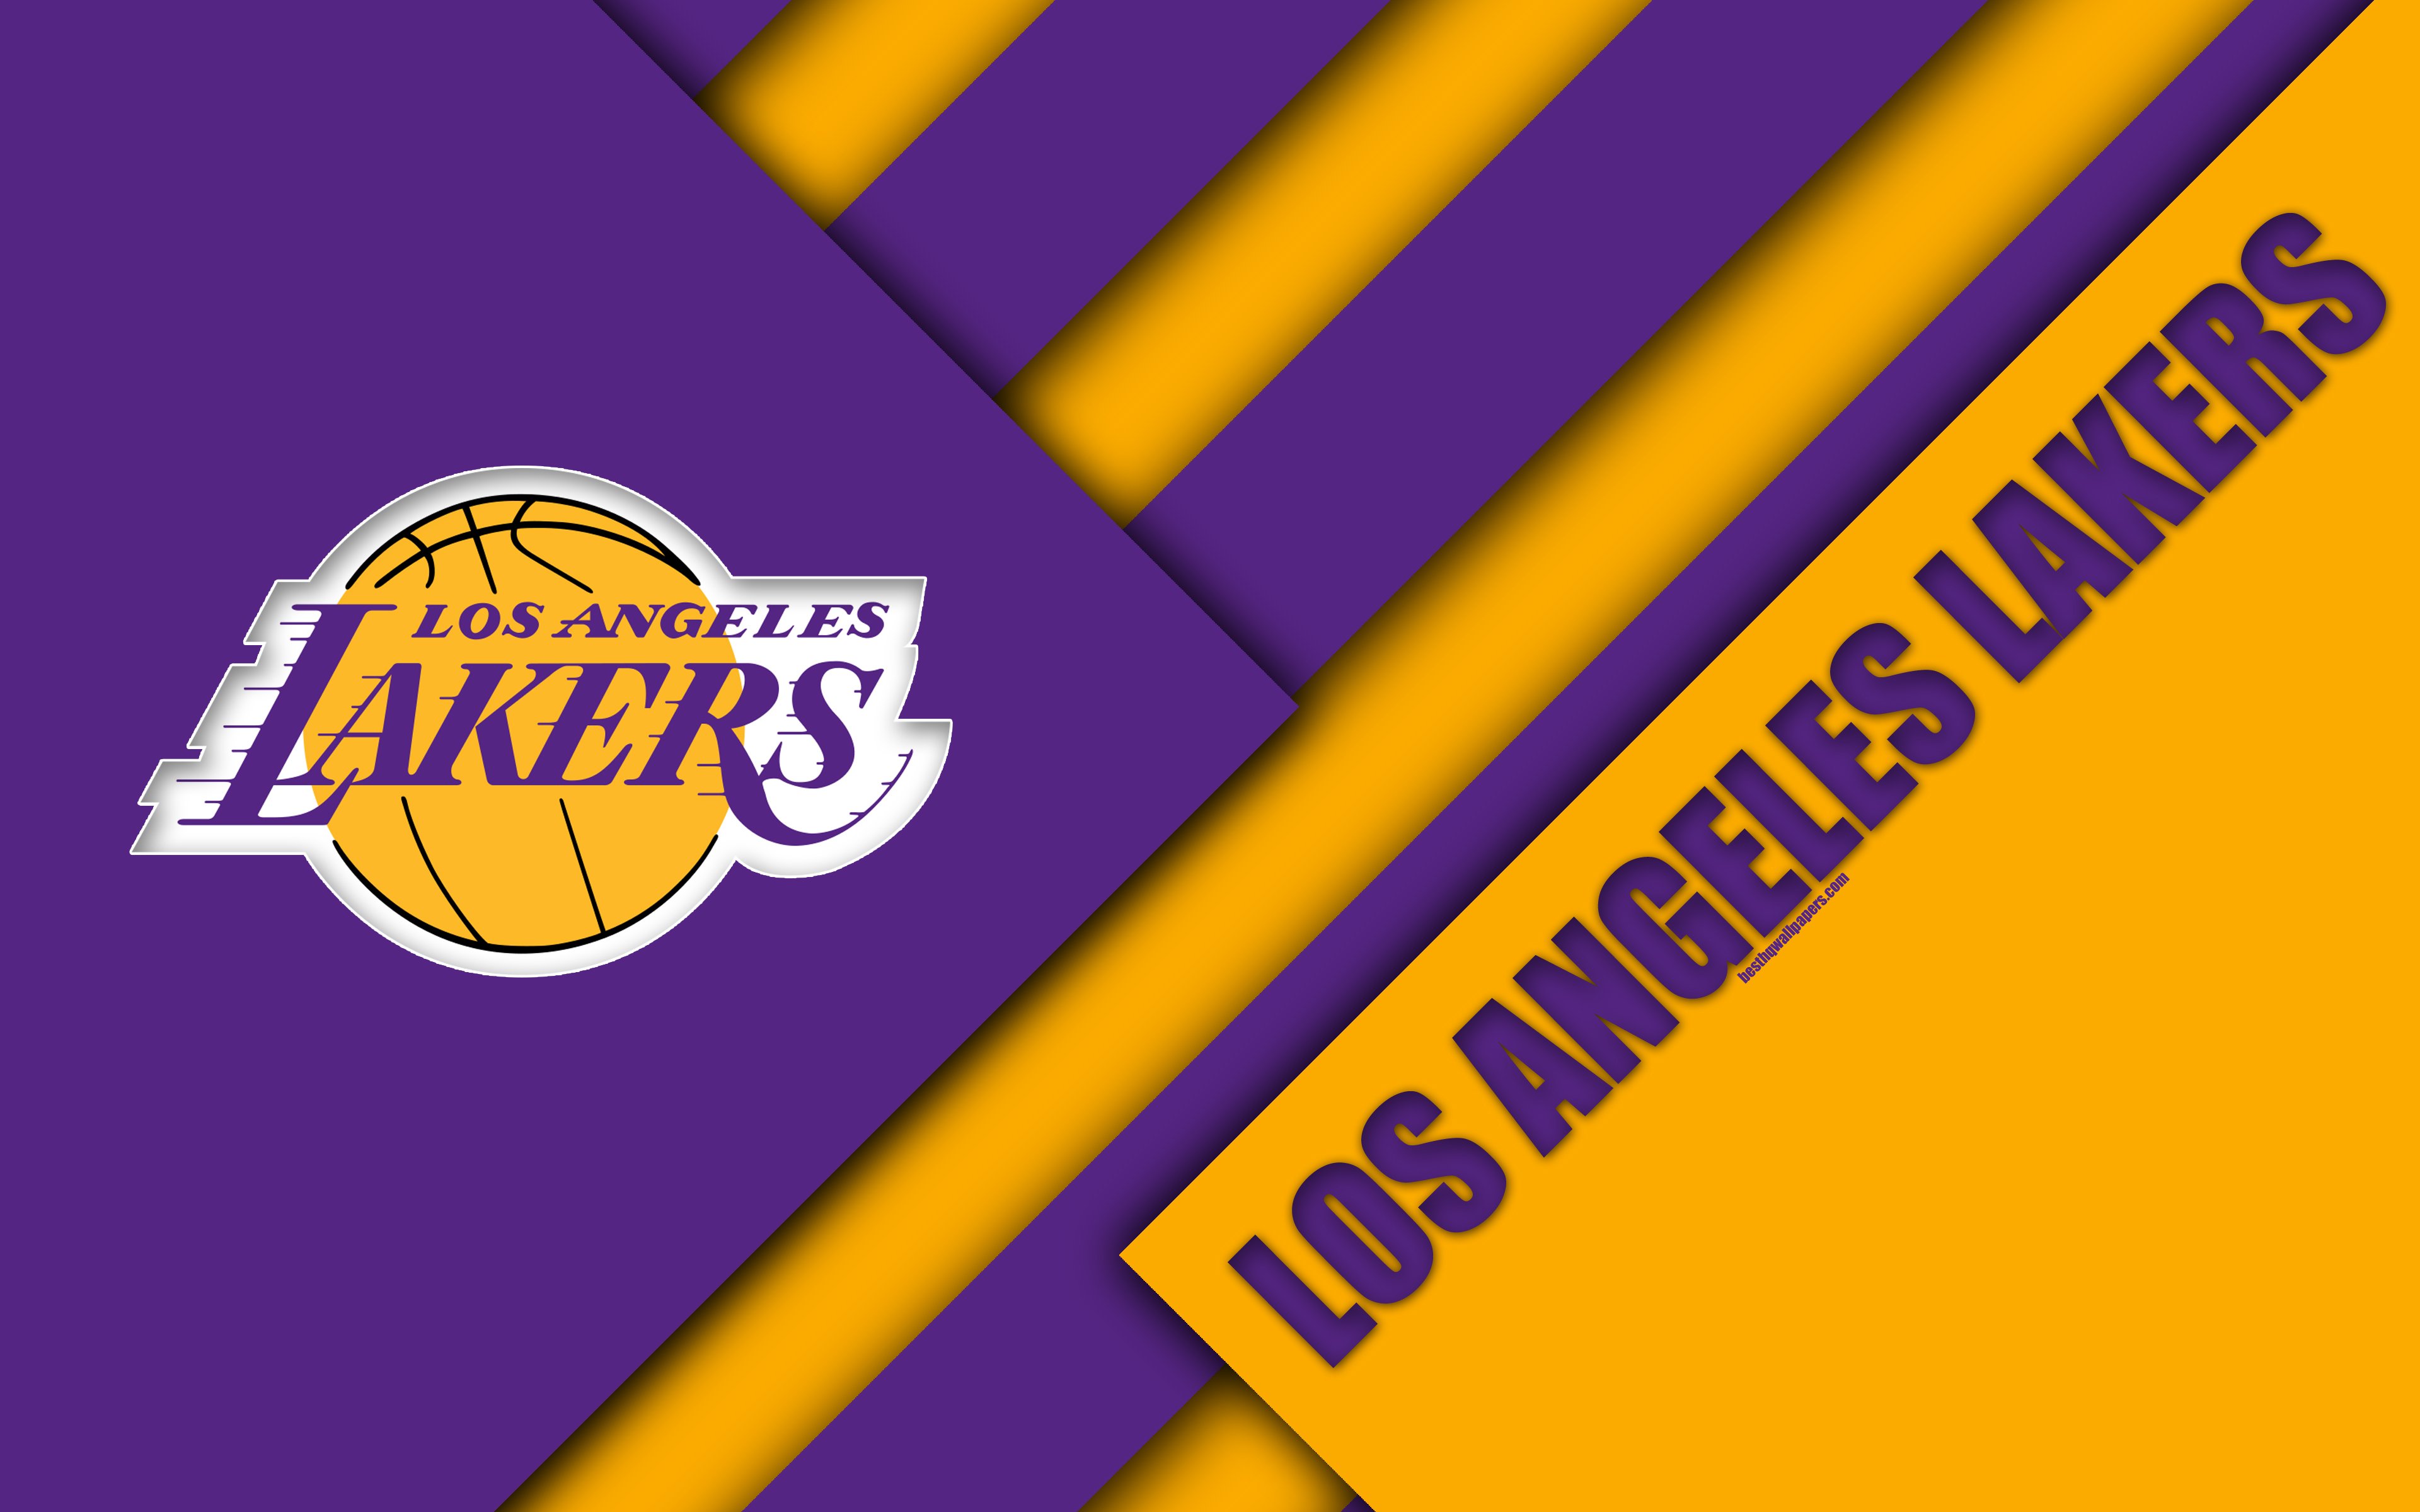 Los Angeles Lakers Wallpaper Enjpg - Vrogue